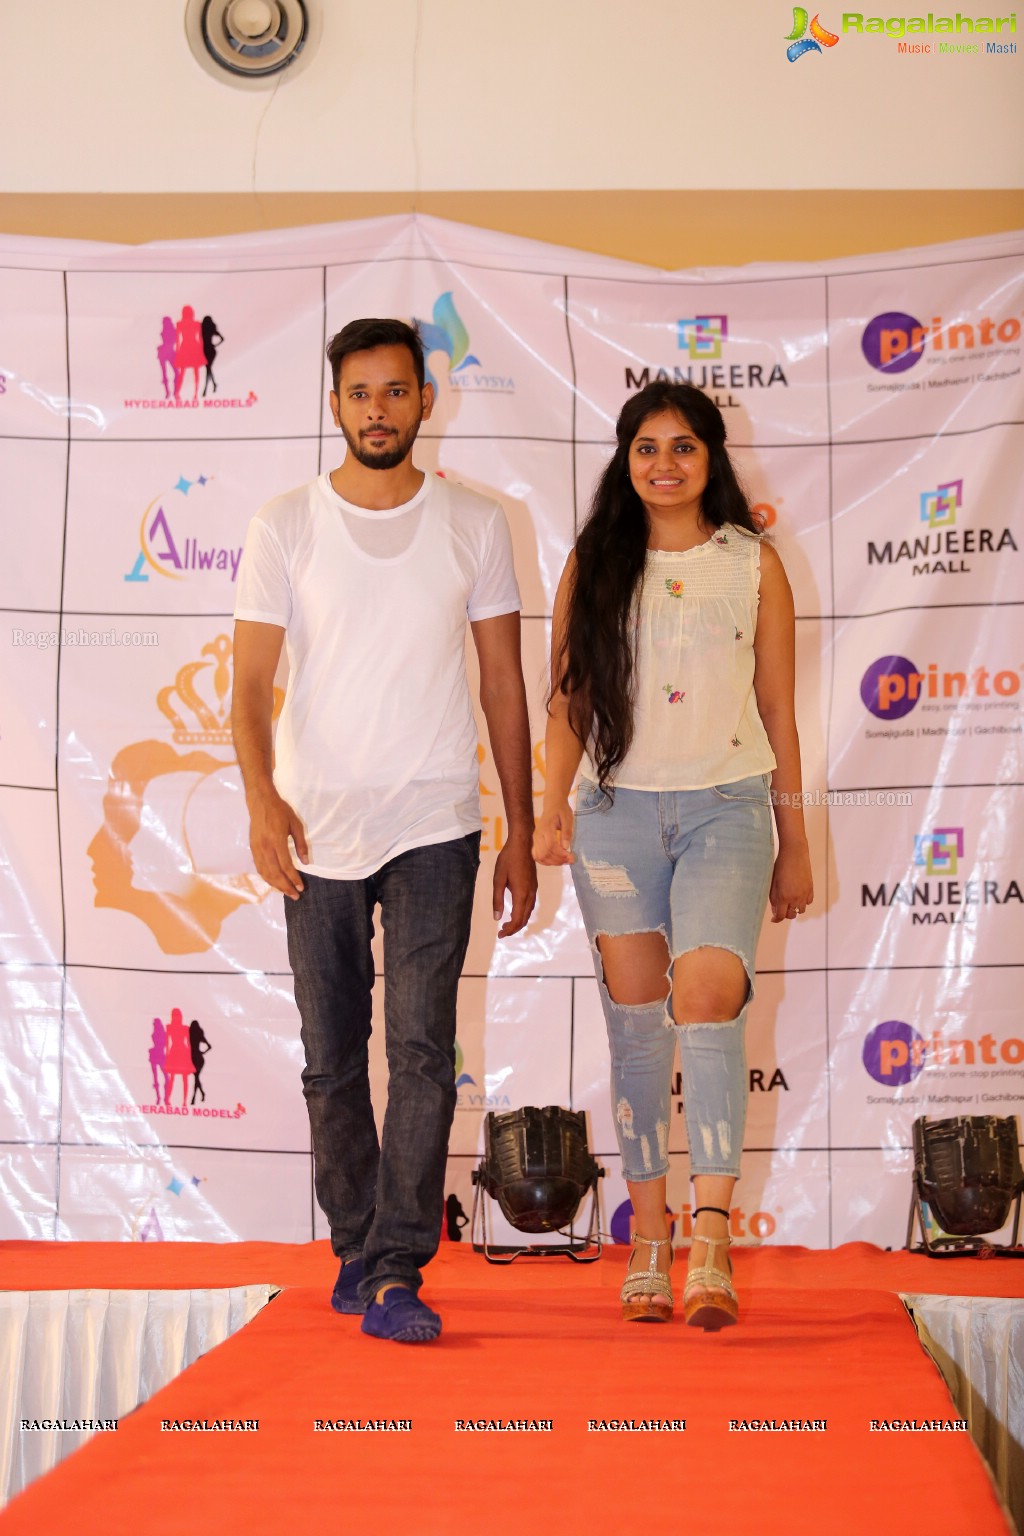 Mr & Miss Telangana 2nd Auditions at Manjeera Mall